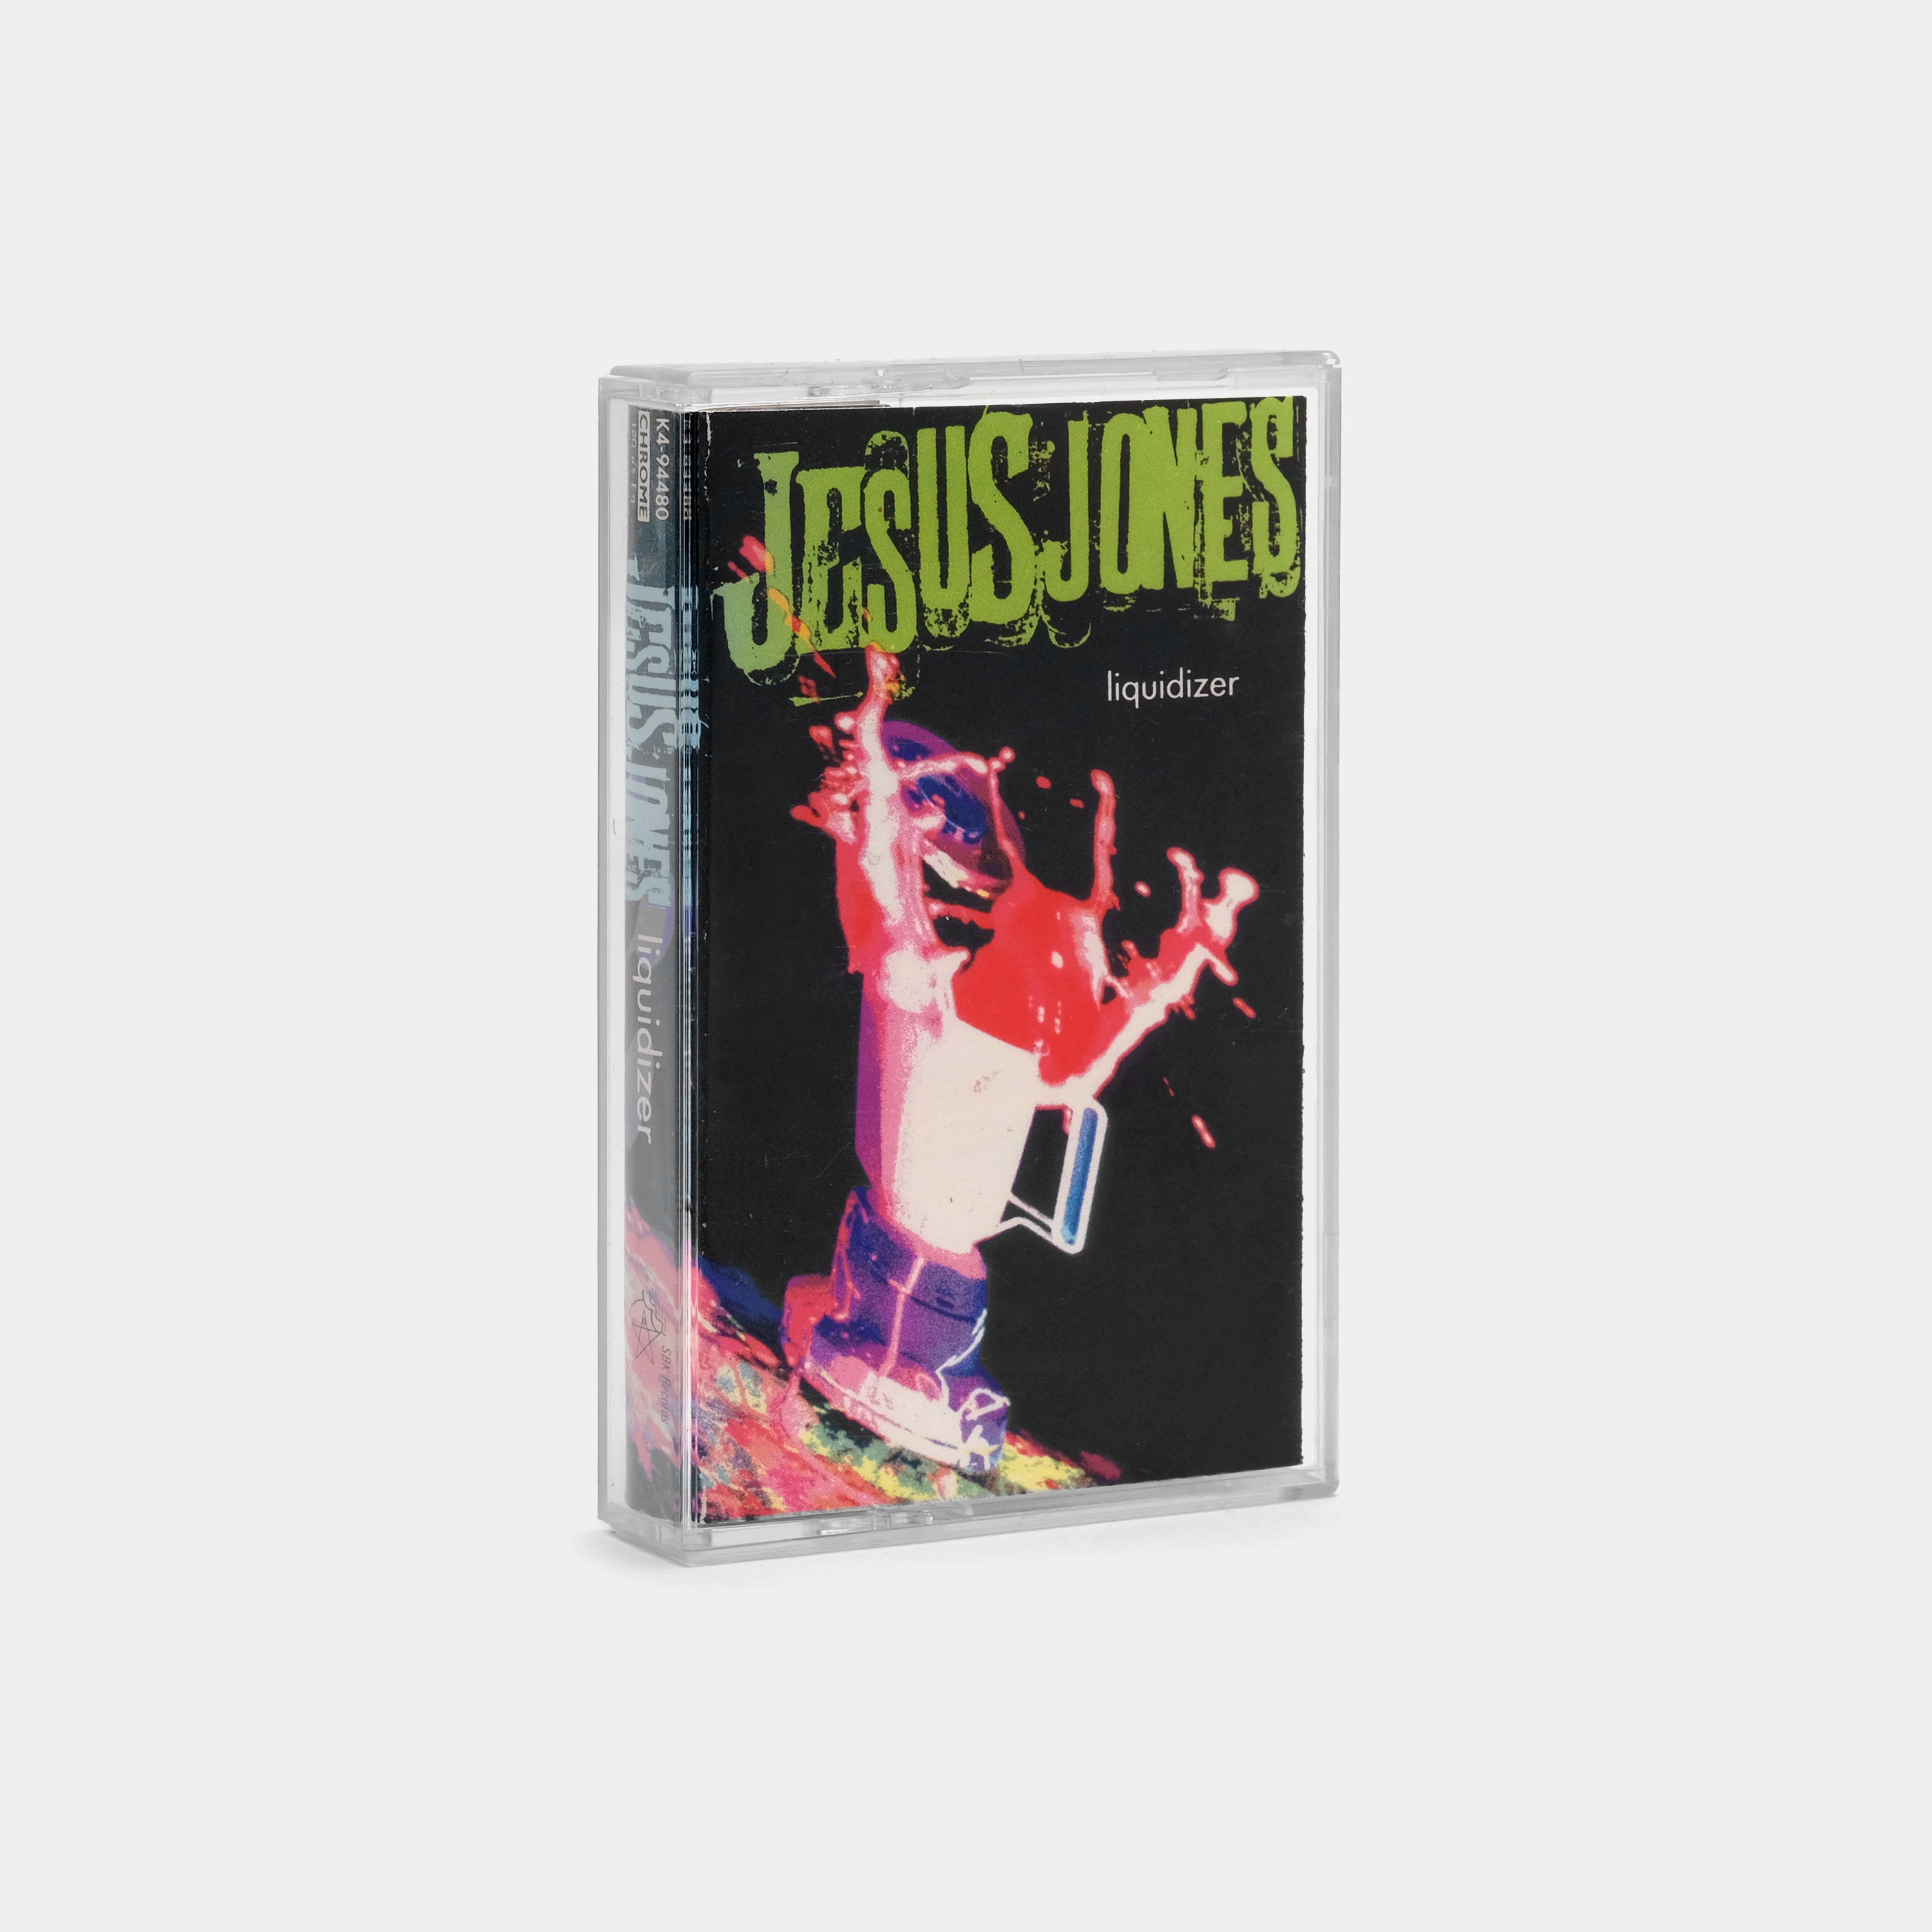 Jesus Jones - Liquidizer Cassette Tape